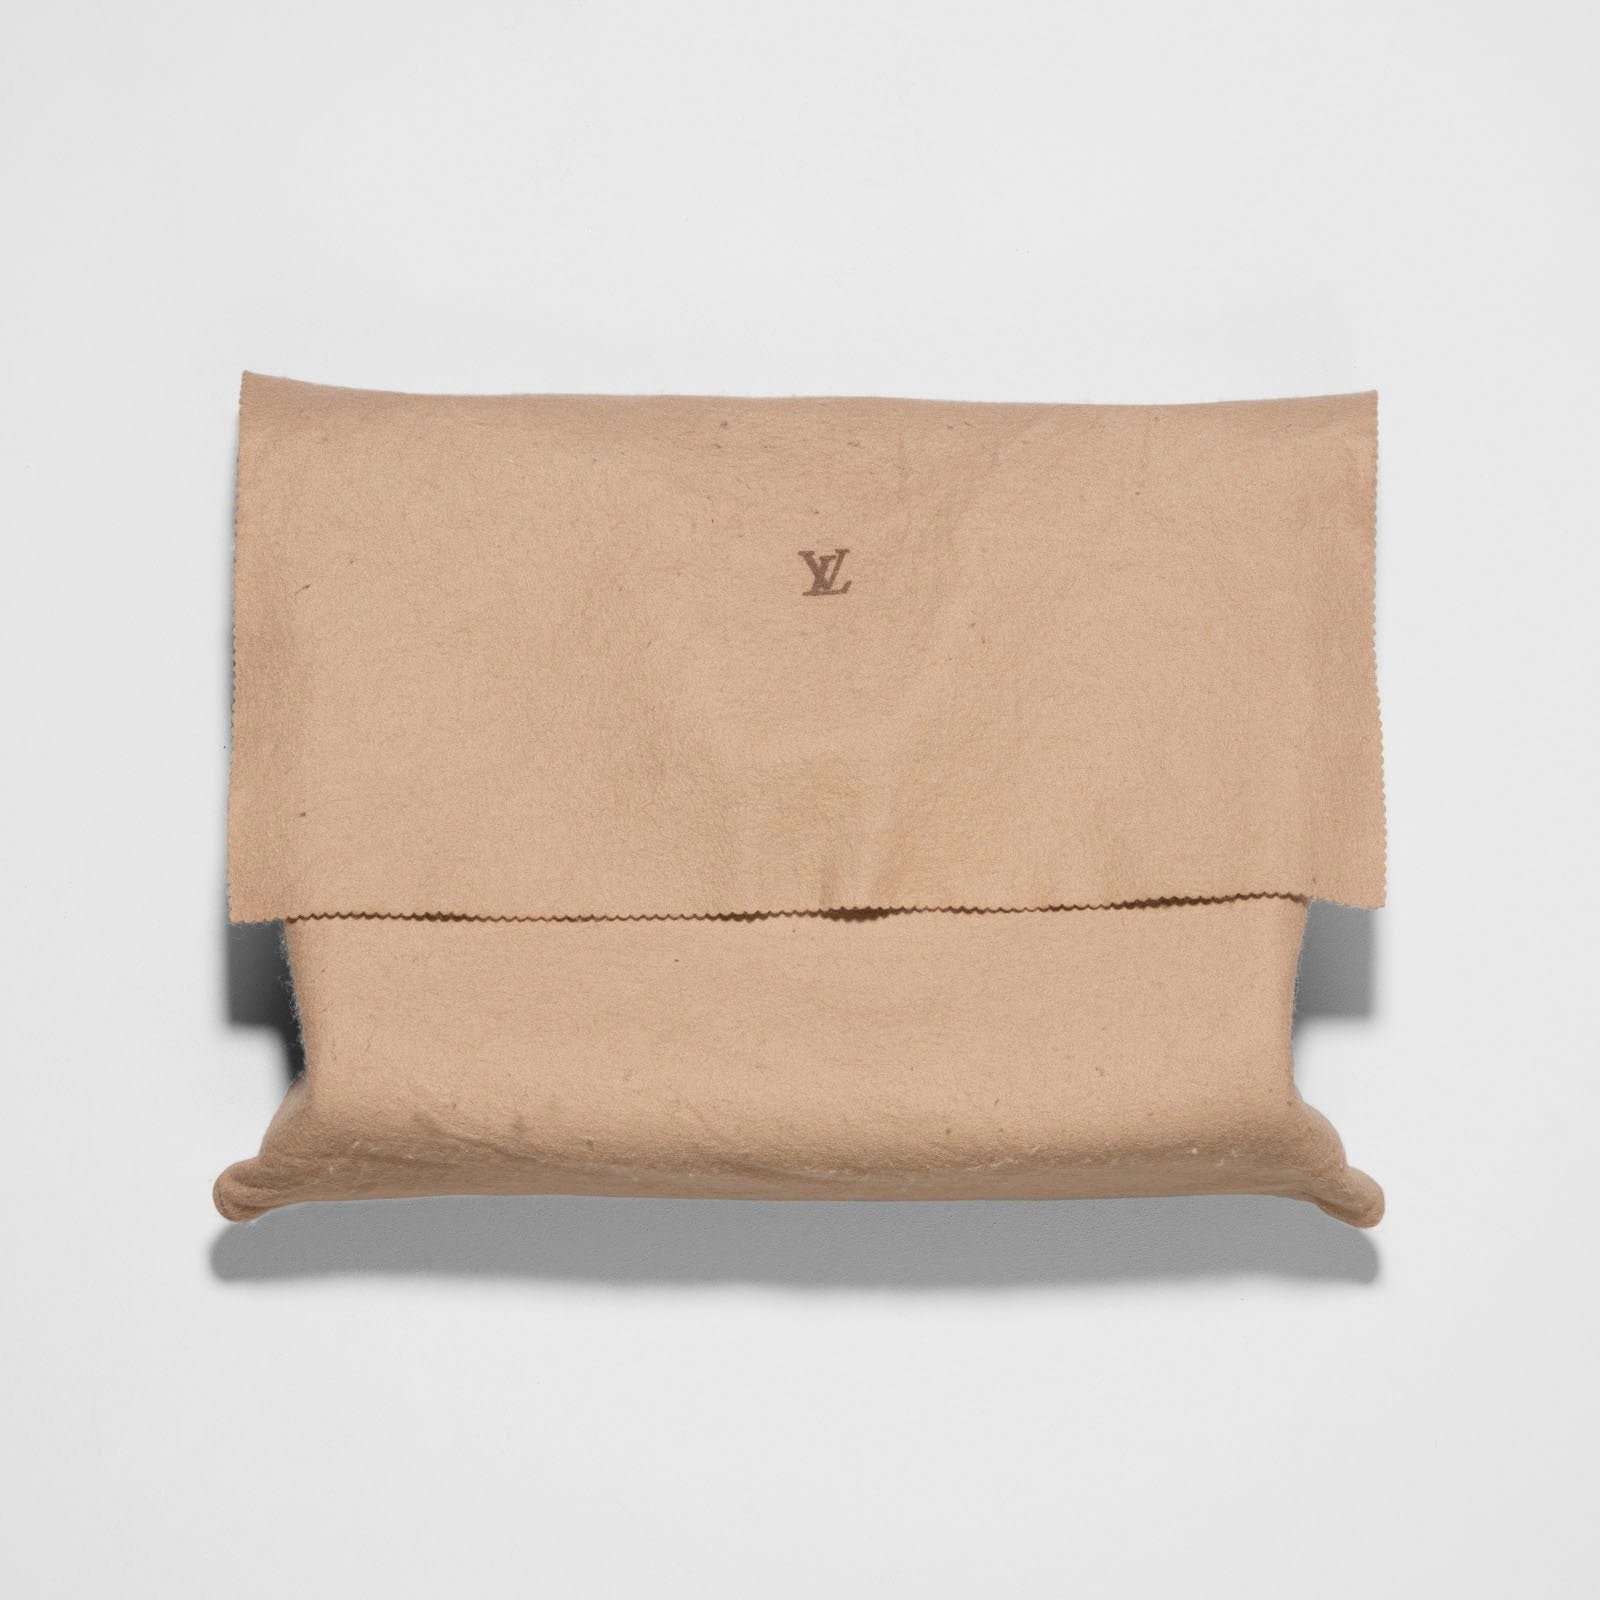 Louis Vuitton Brown Kazbek Taiga Leather Bag